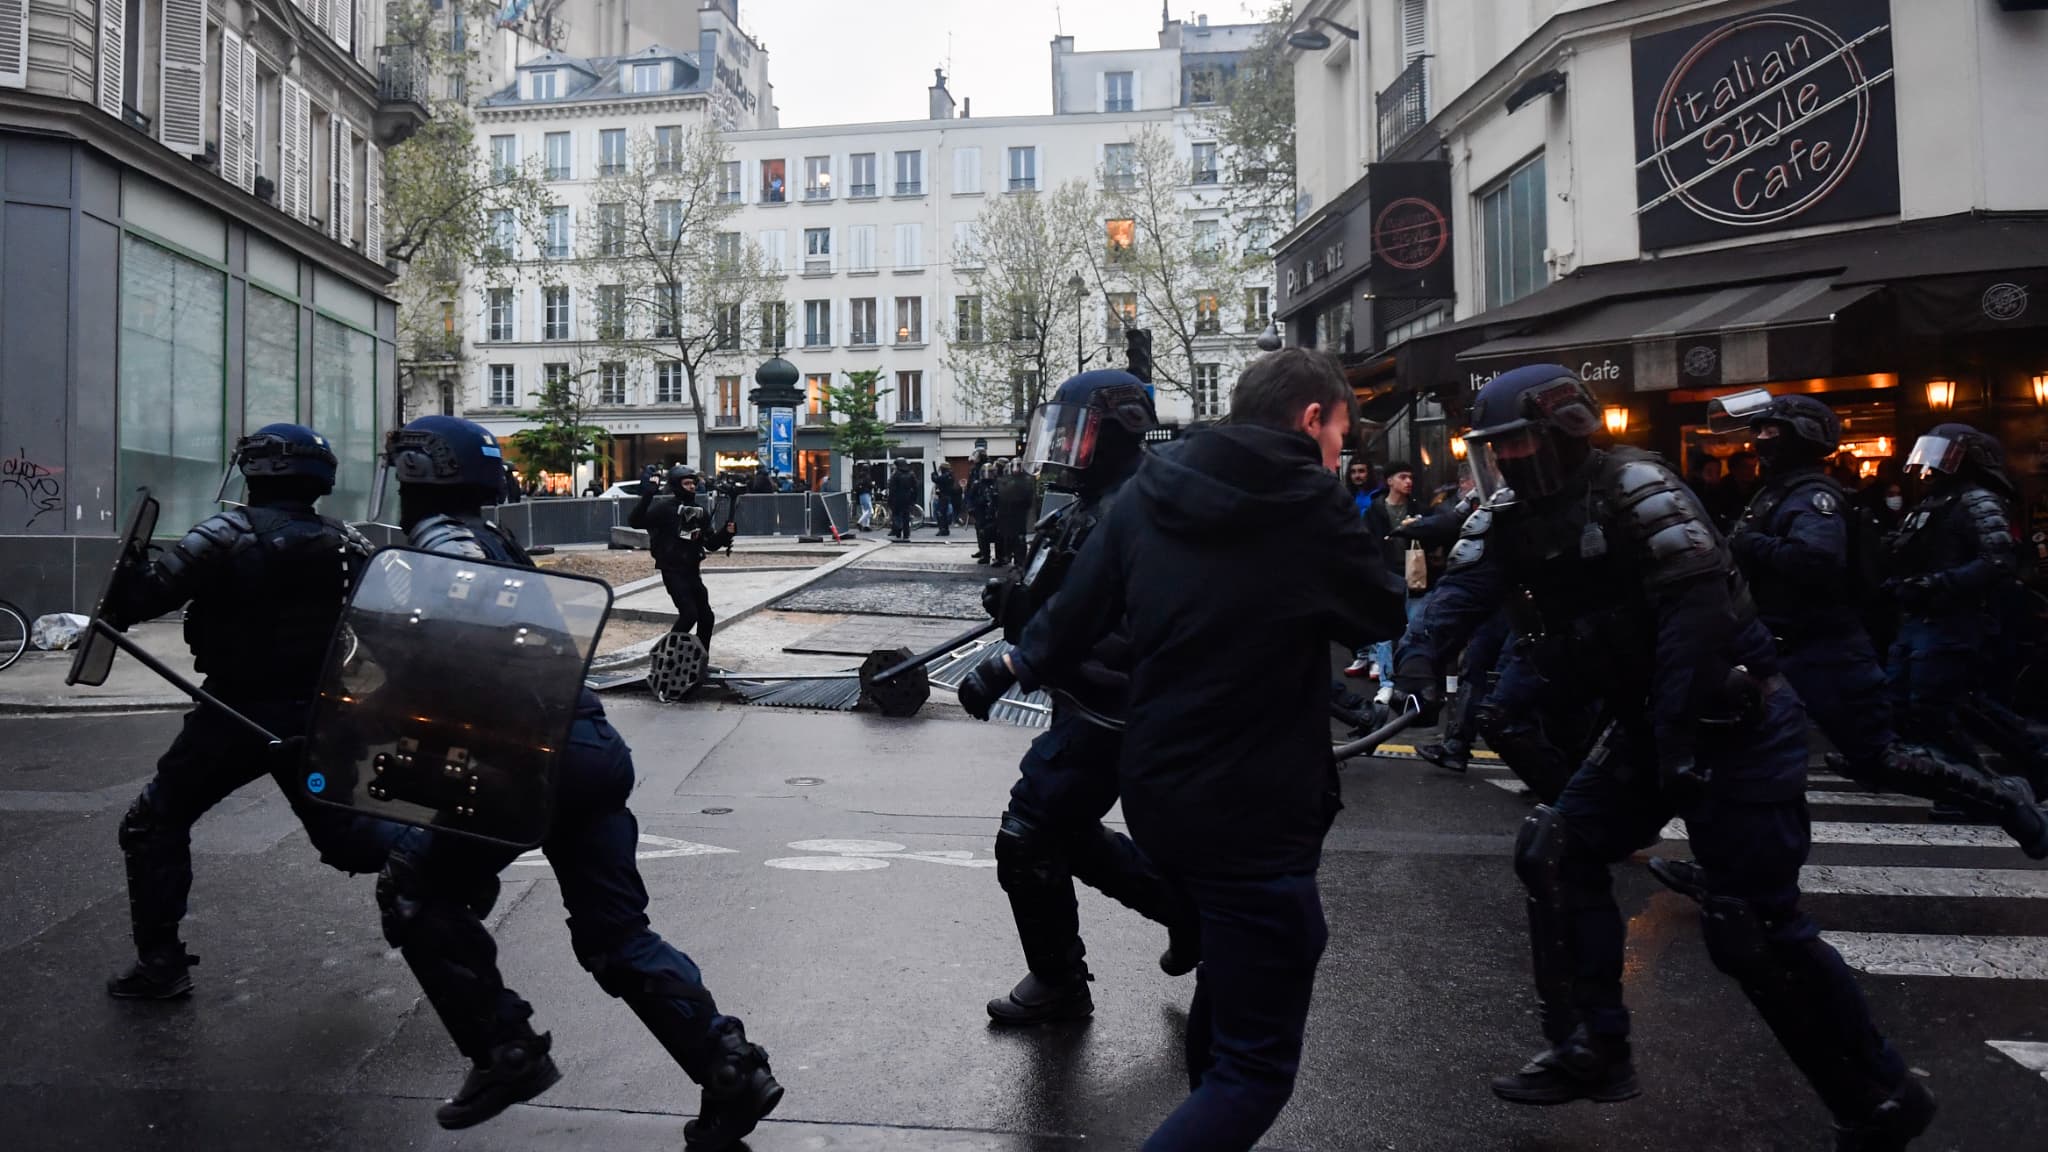 Réforme des retraites à Paris : Quand un camion de la police